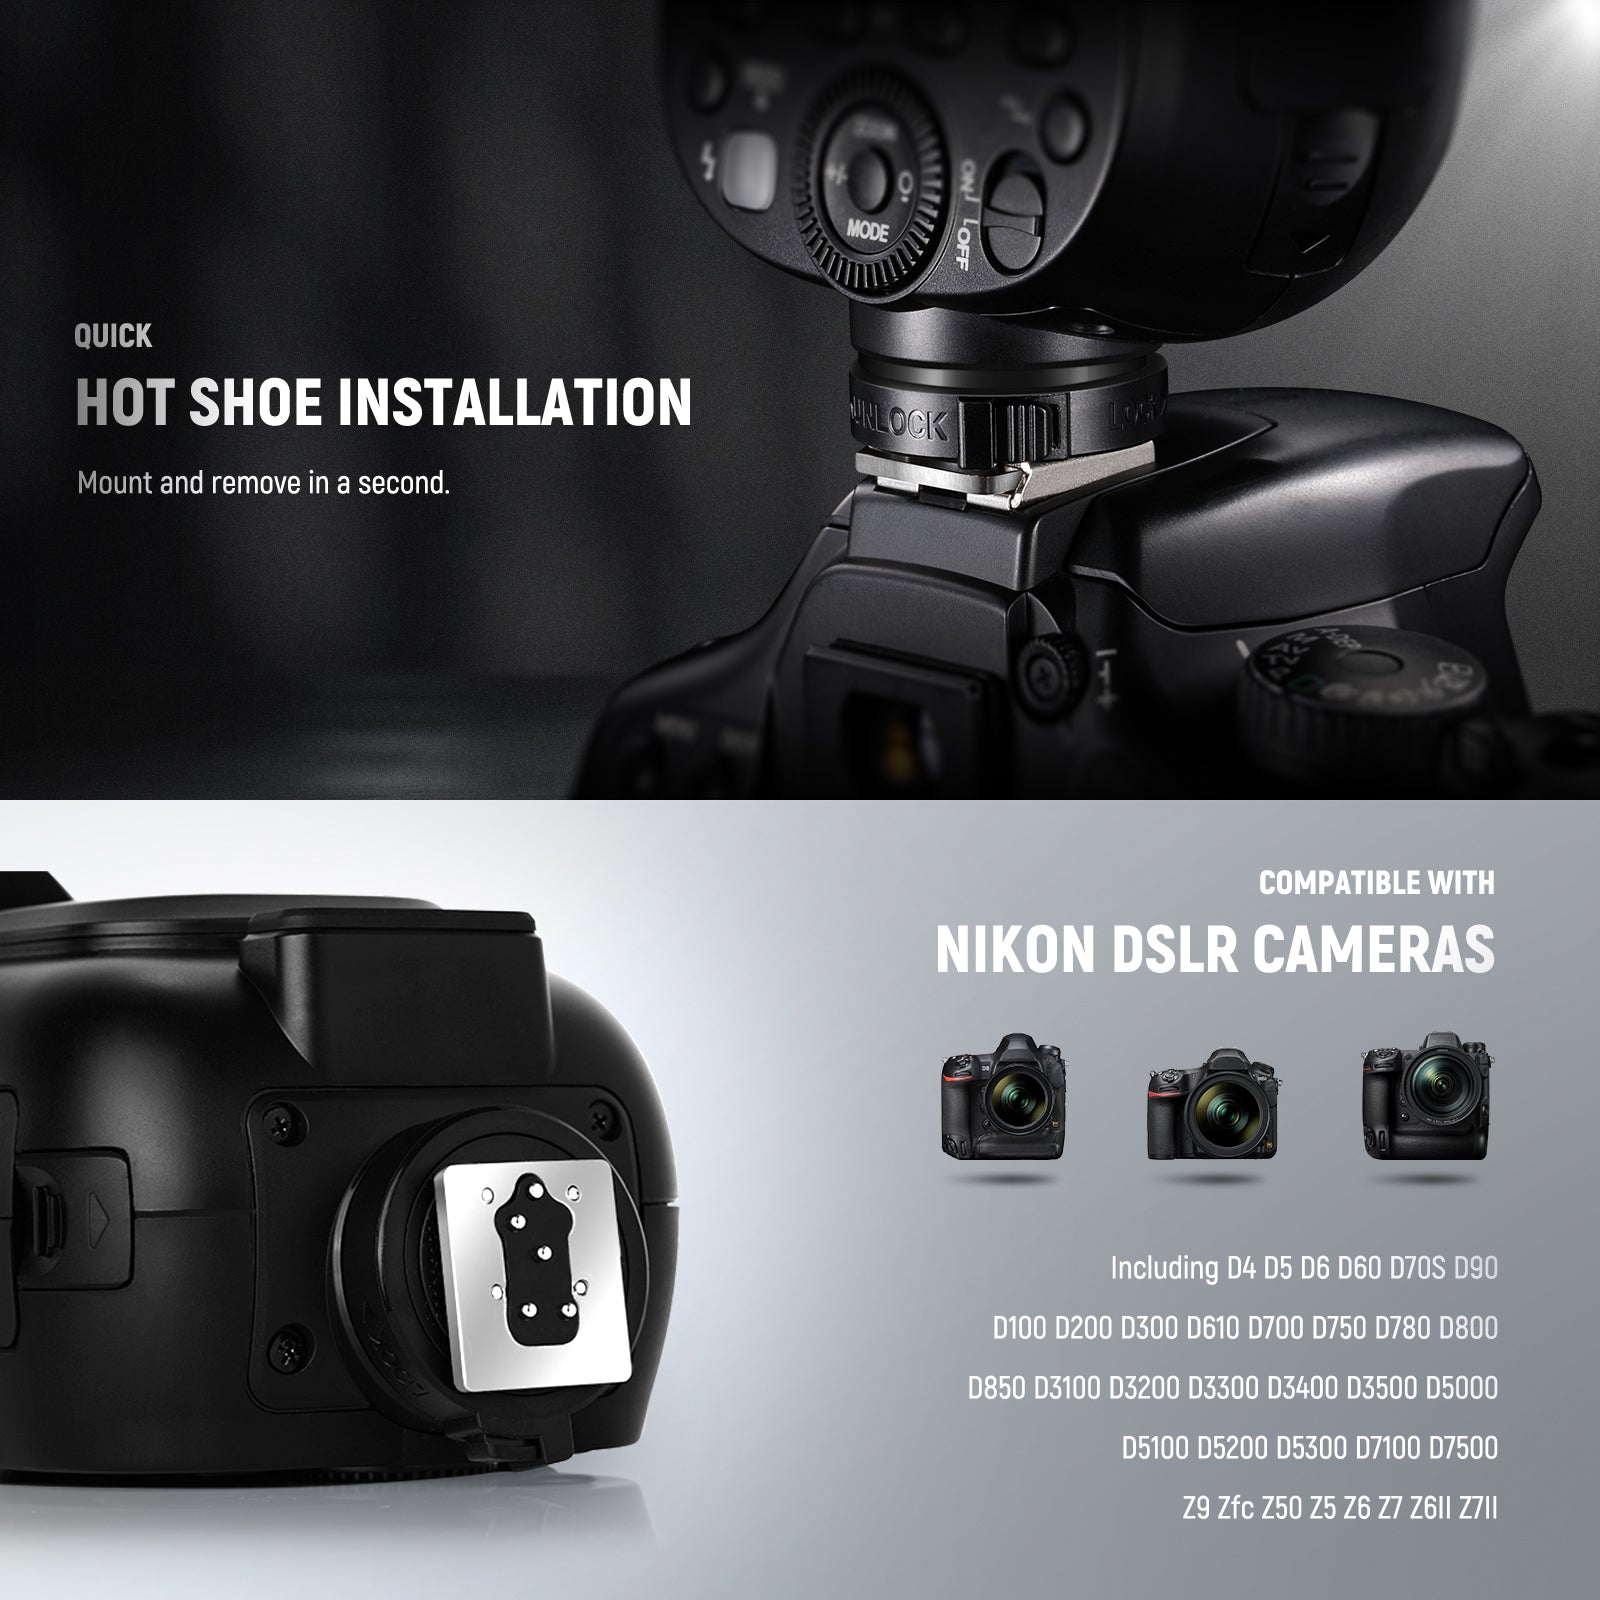 NEEWER Z1-N TTL Round Head Flash Speedlite for Nikon DSLR Cameras